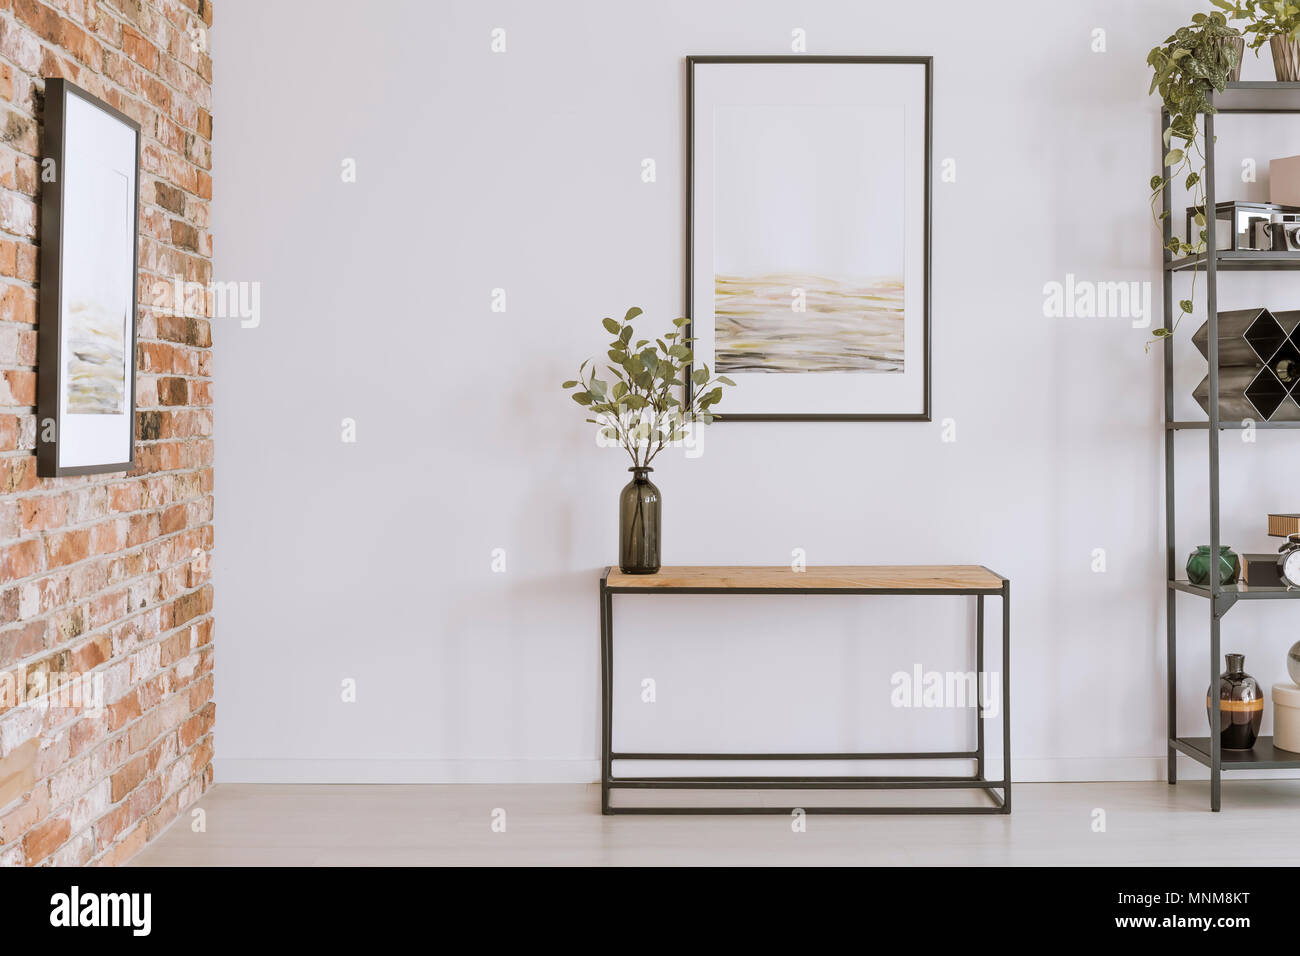 Peinture simple en bois au-dessus de table console avec des brindilles dans un vase de verre in modern living room interior Banque D'Images